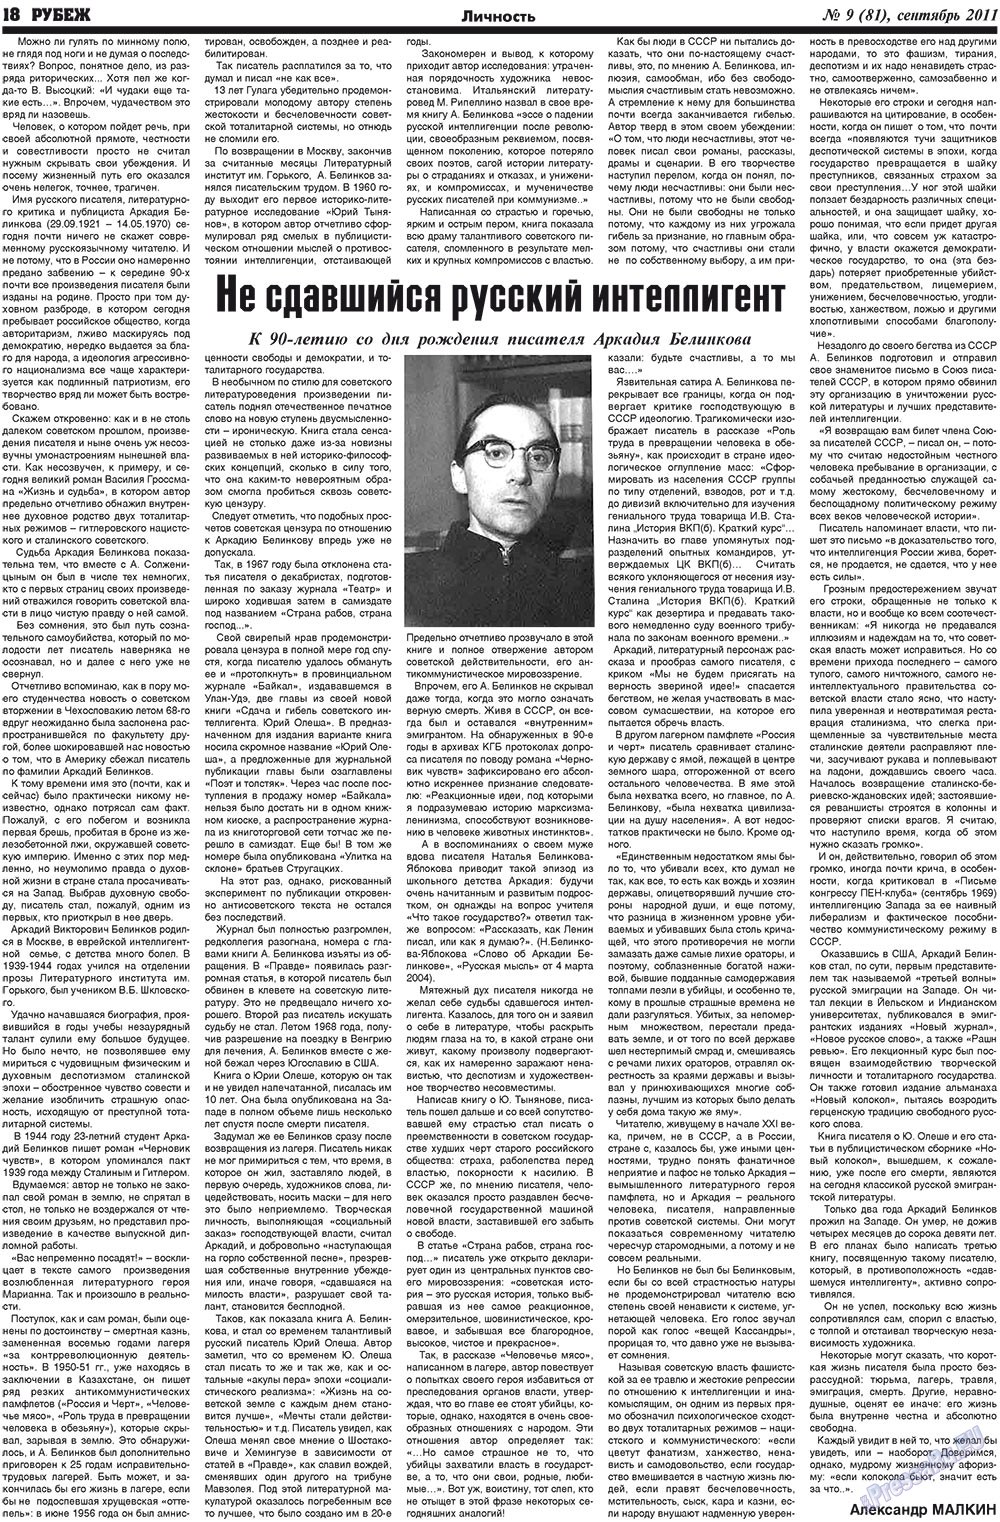 Рубеж (газета). 2011 год, номер 9, стр. 18